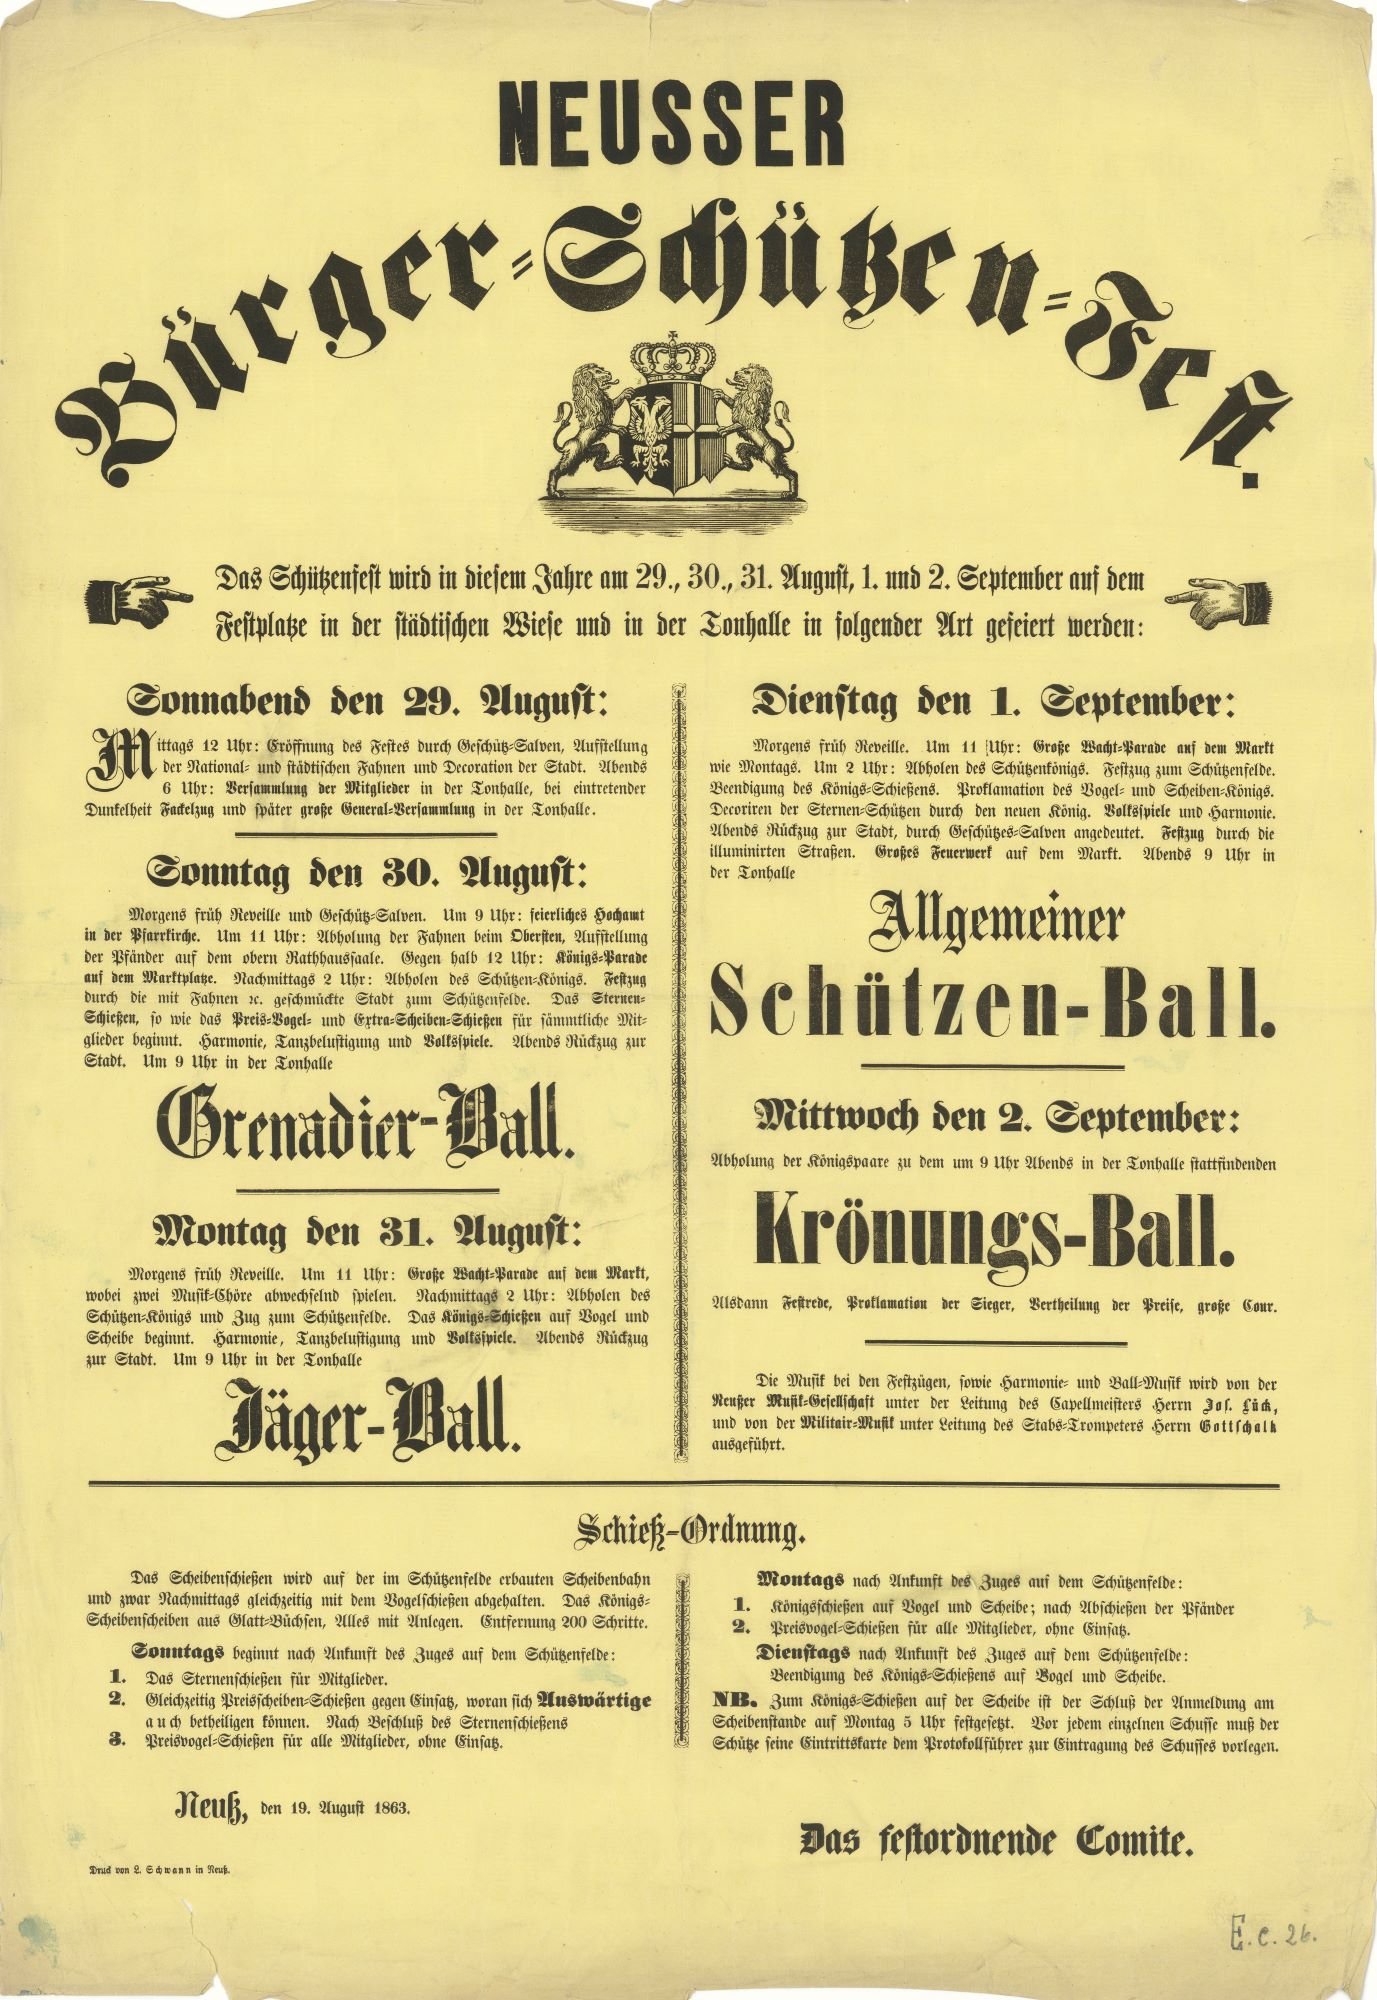 Festplakat Schützenfest Neuss 1863 (Rheinisches Schützenmuseum Neuss CC BY-NC-SA)